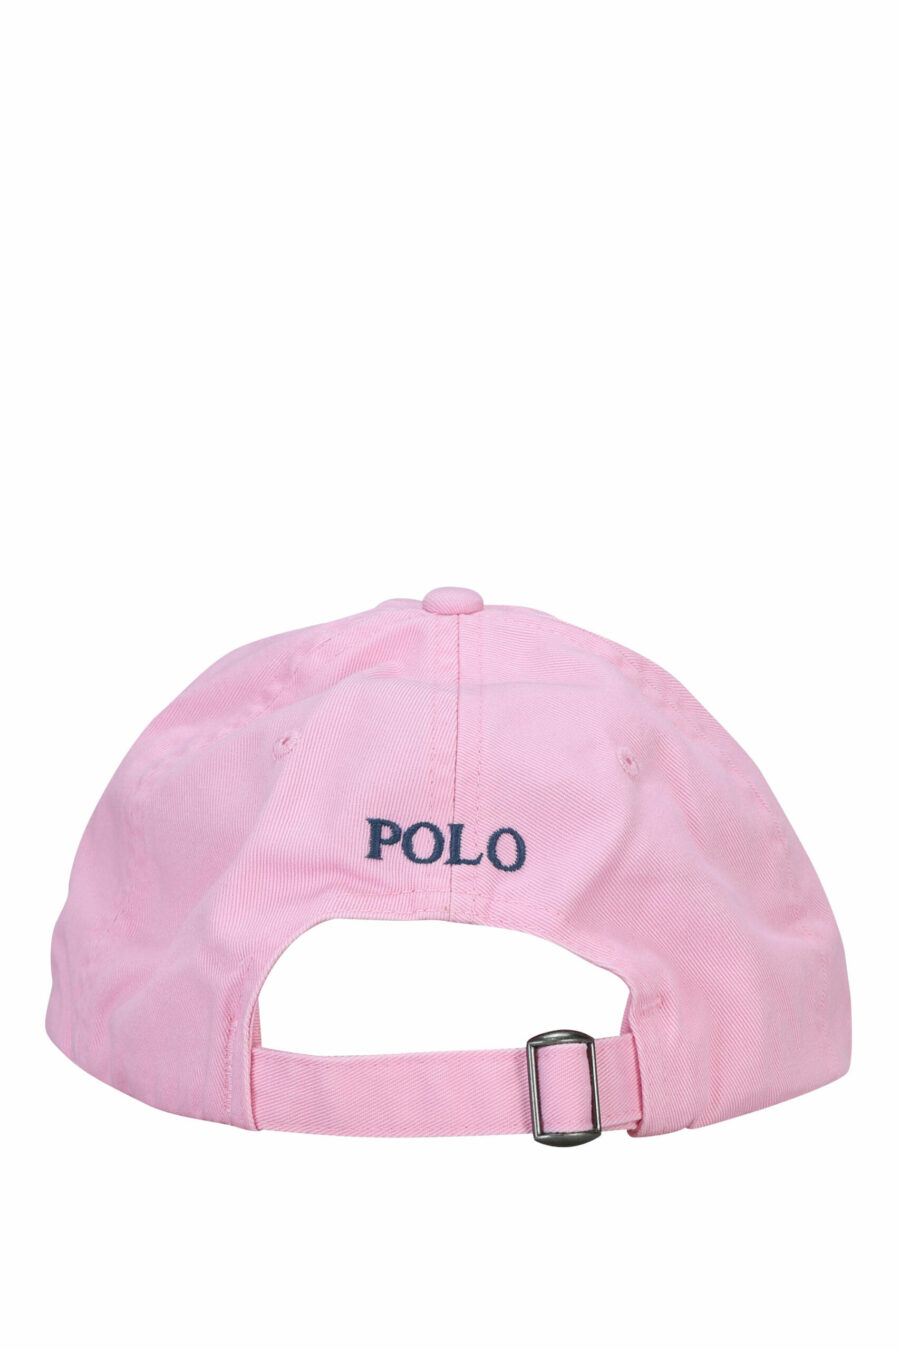 Gorra rosa con minilogo "polo" - 3616411320032 1 scaled